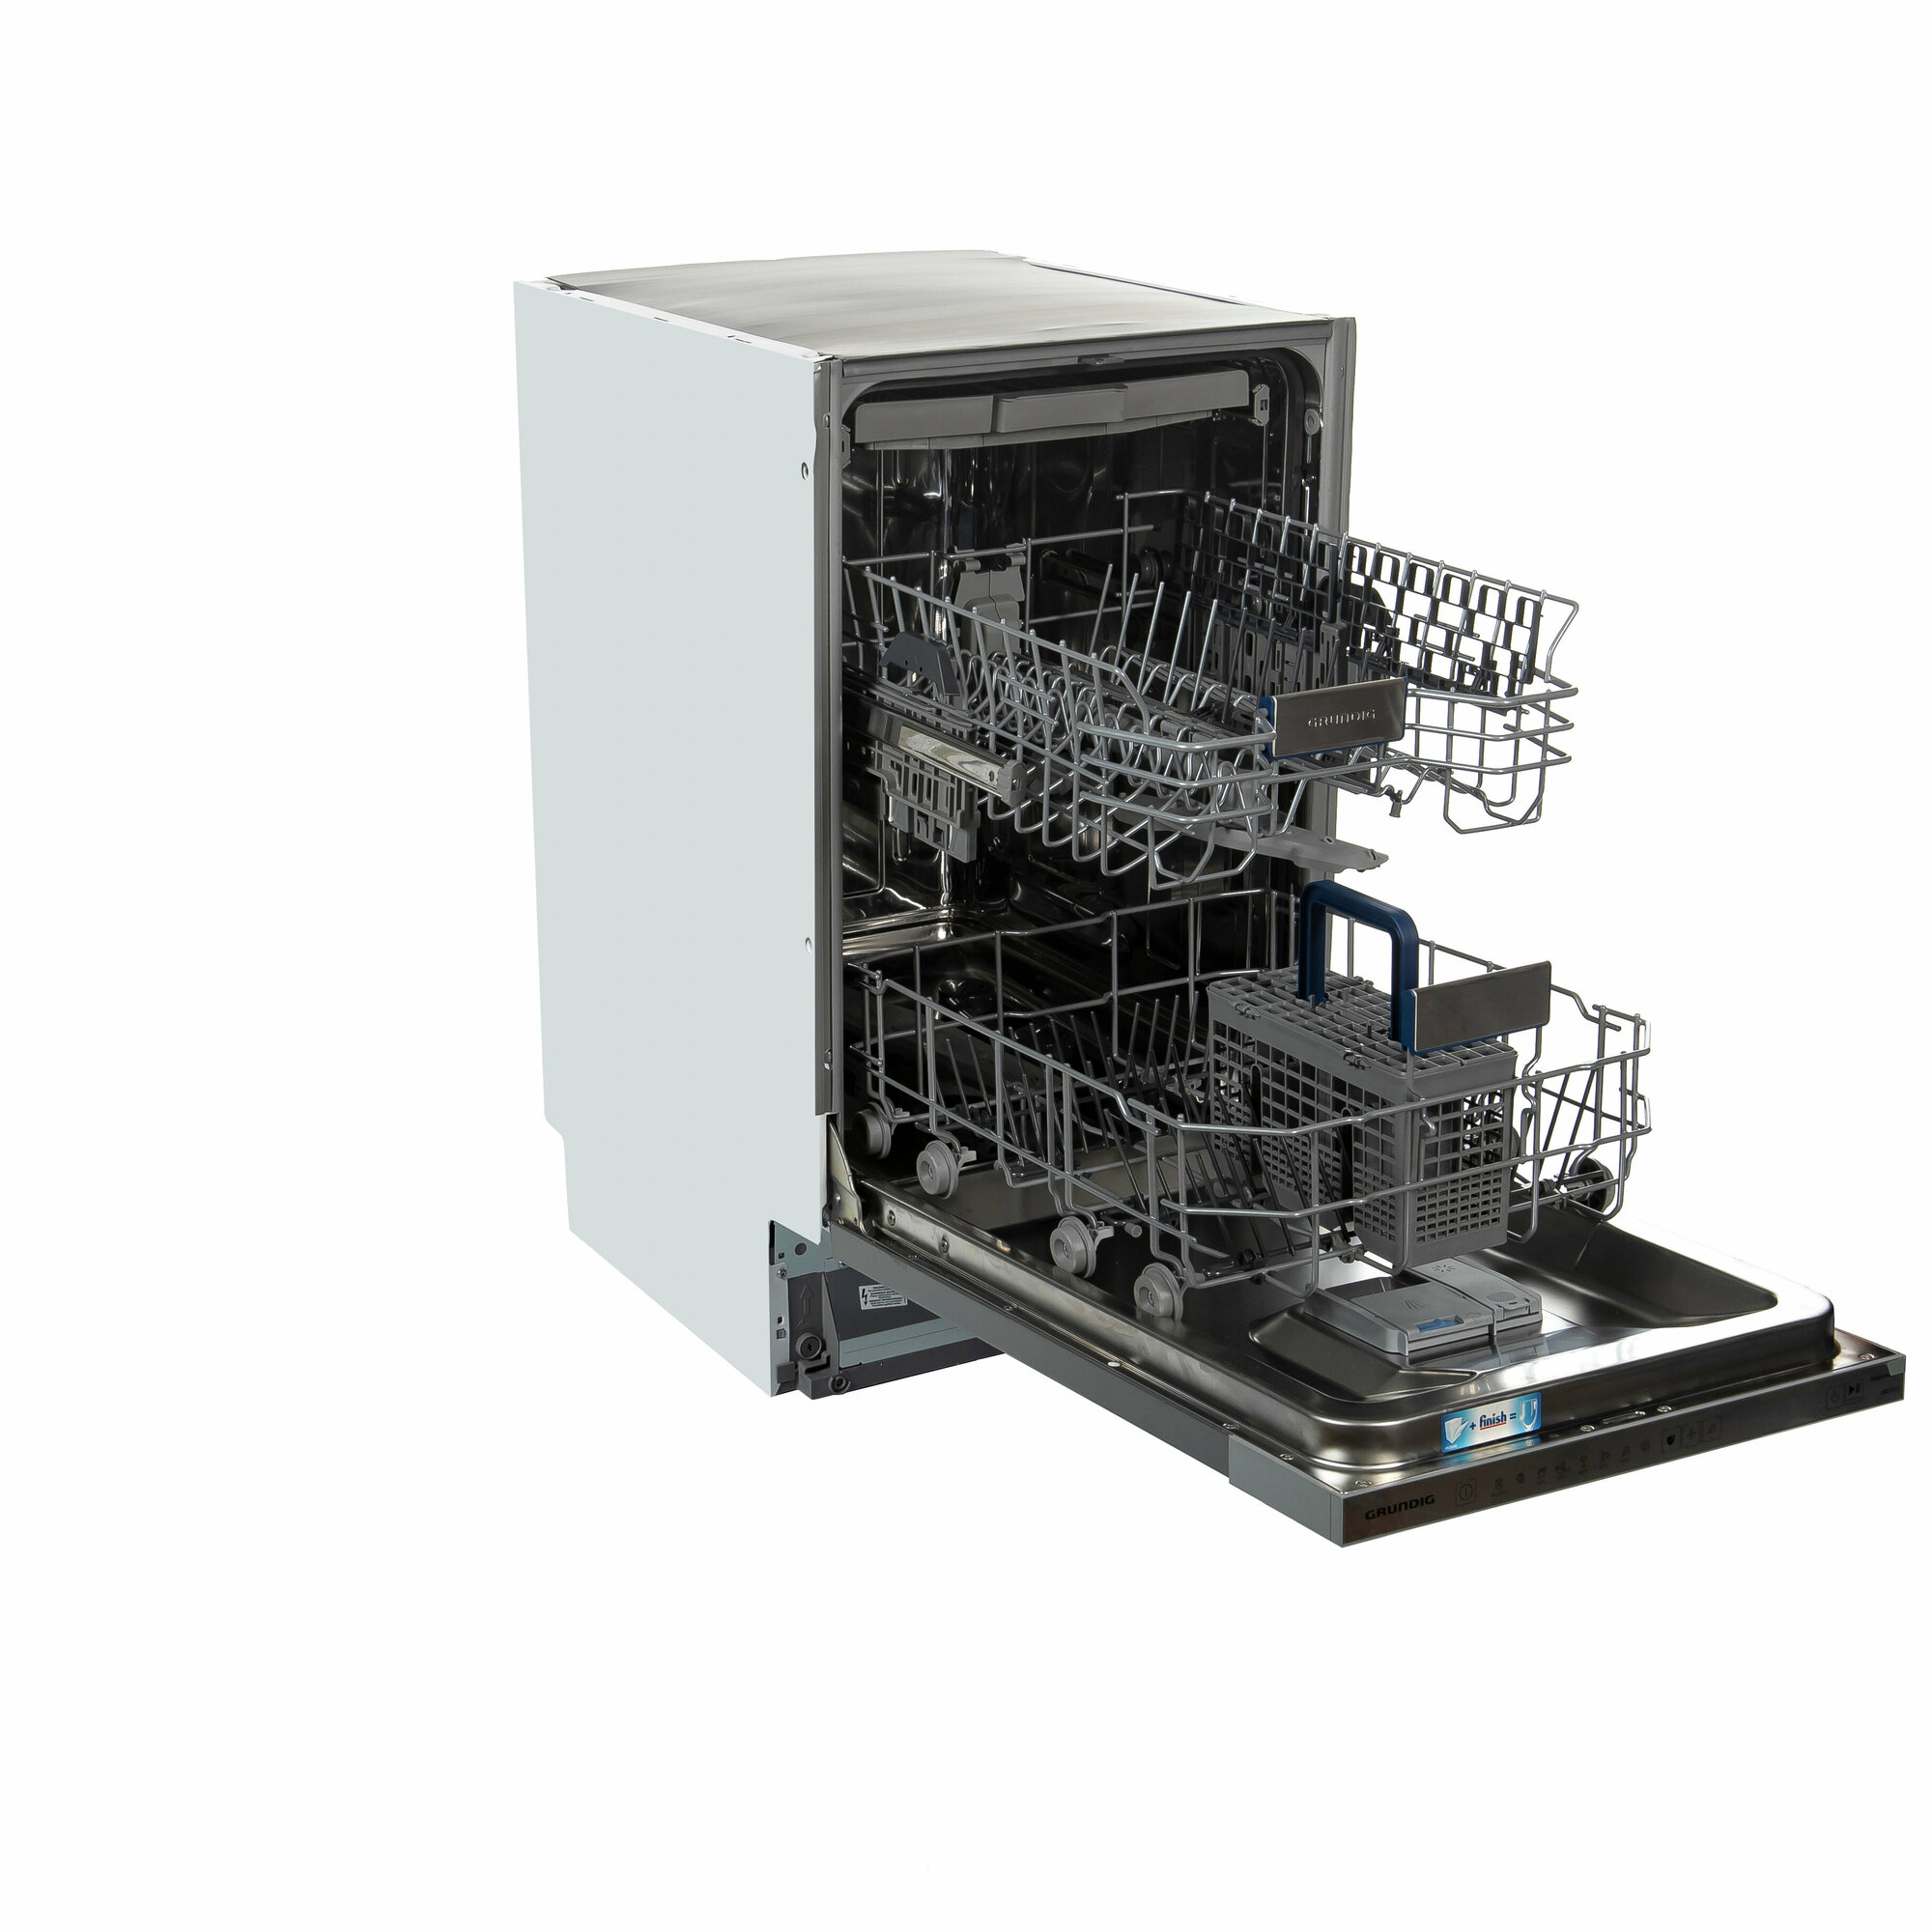 Встраиваемая посудомоечная машина Grundig GSVP4151Q